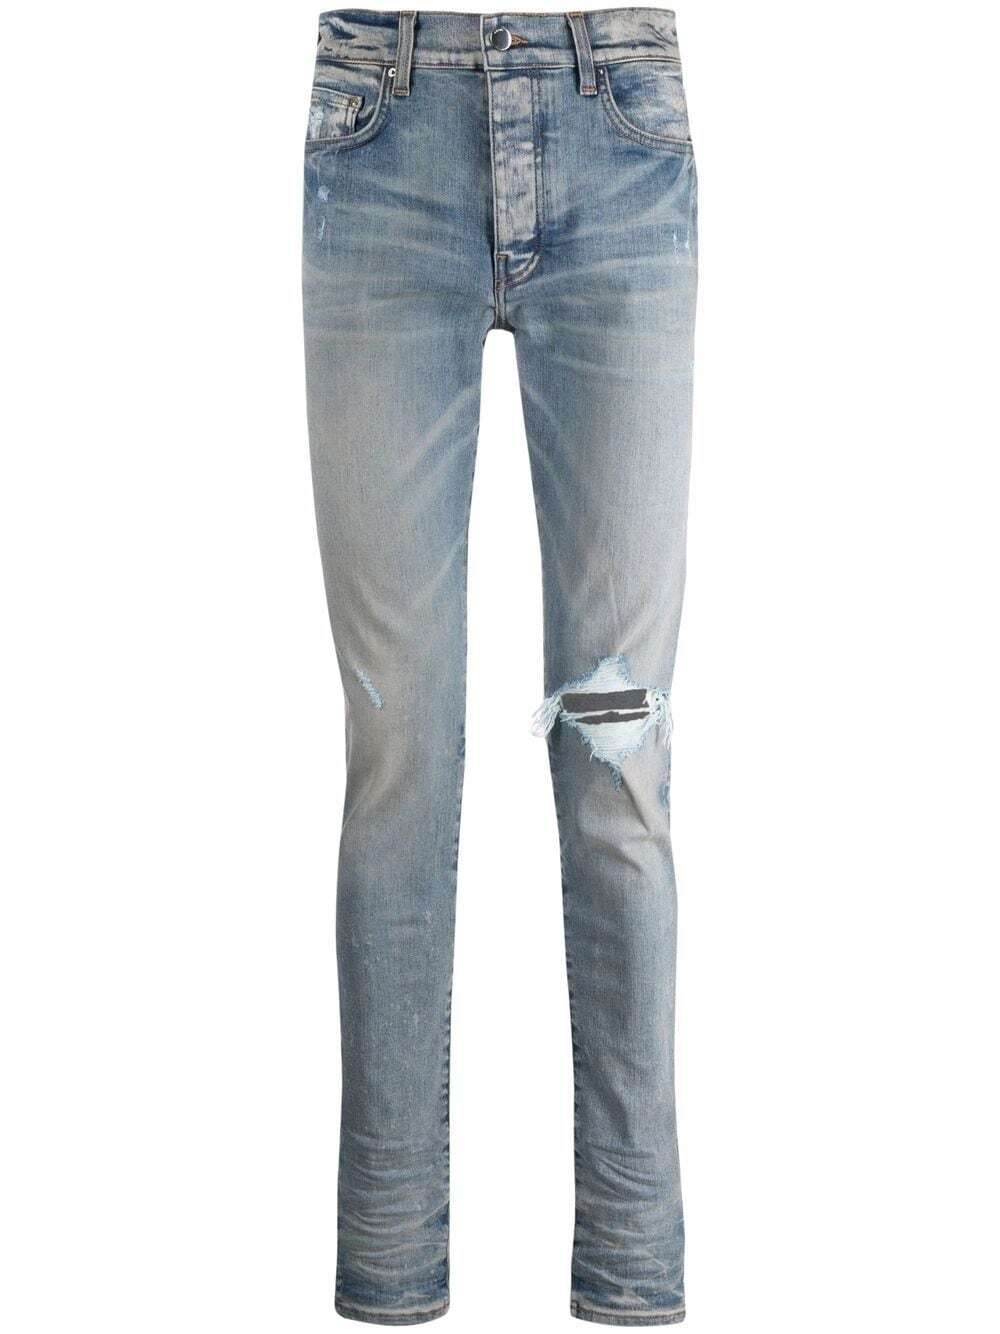 Skinny-Jeans im Distressed-Look in Hellblau